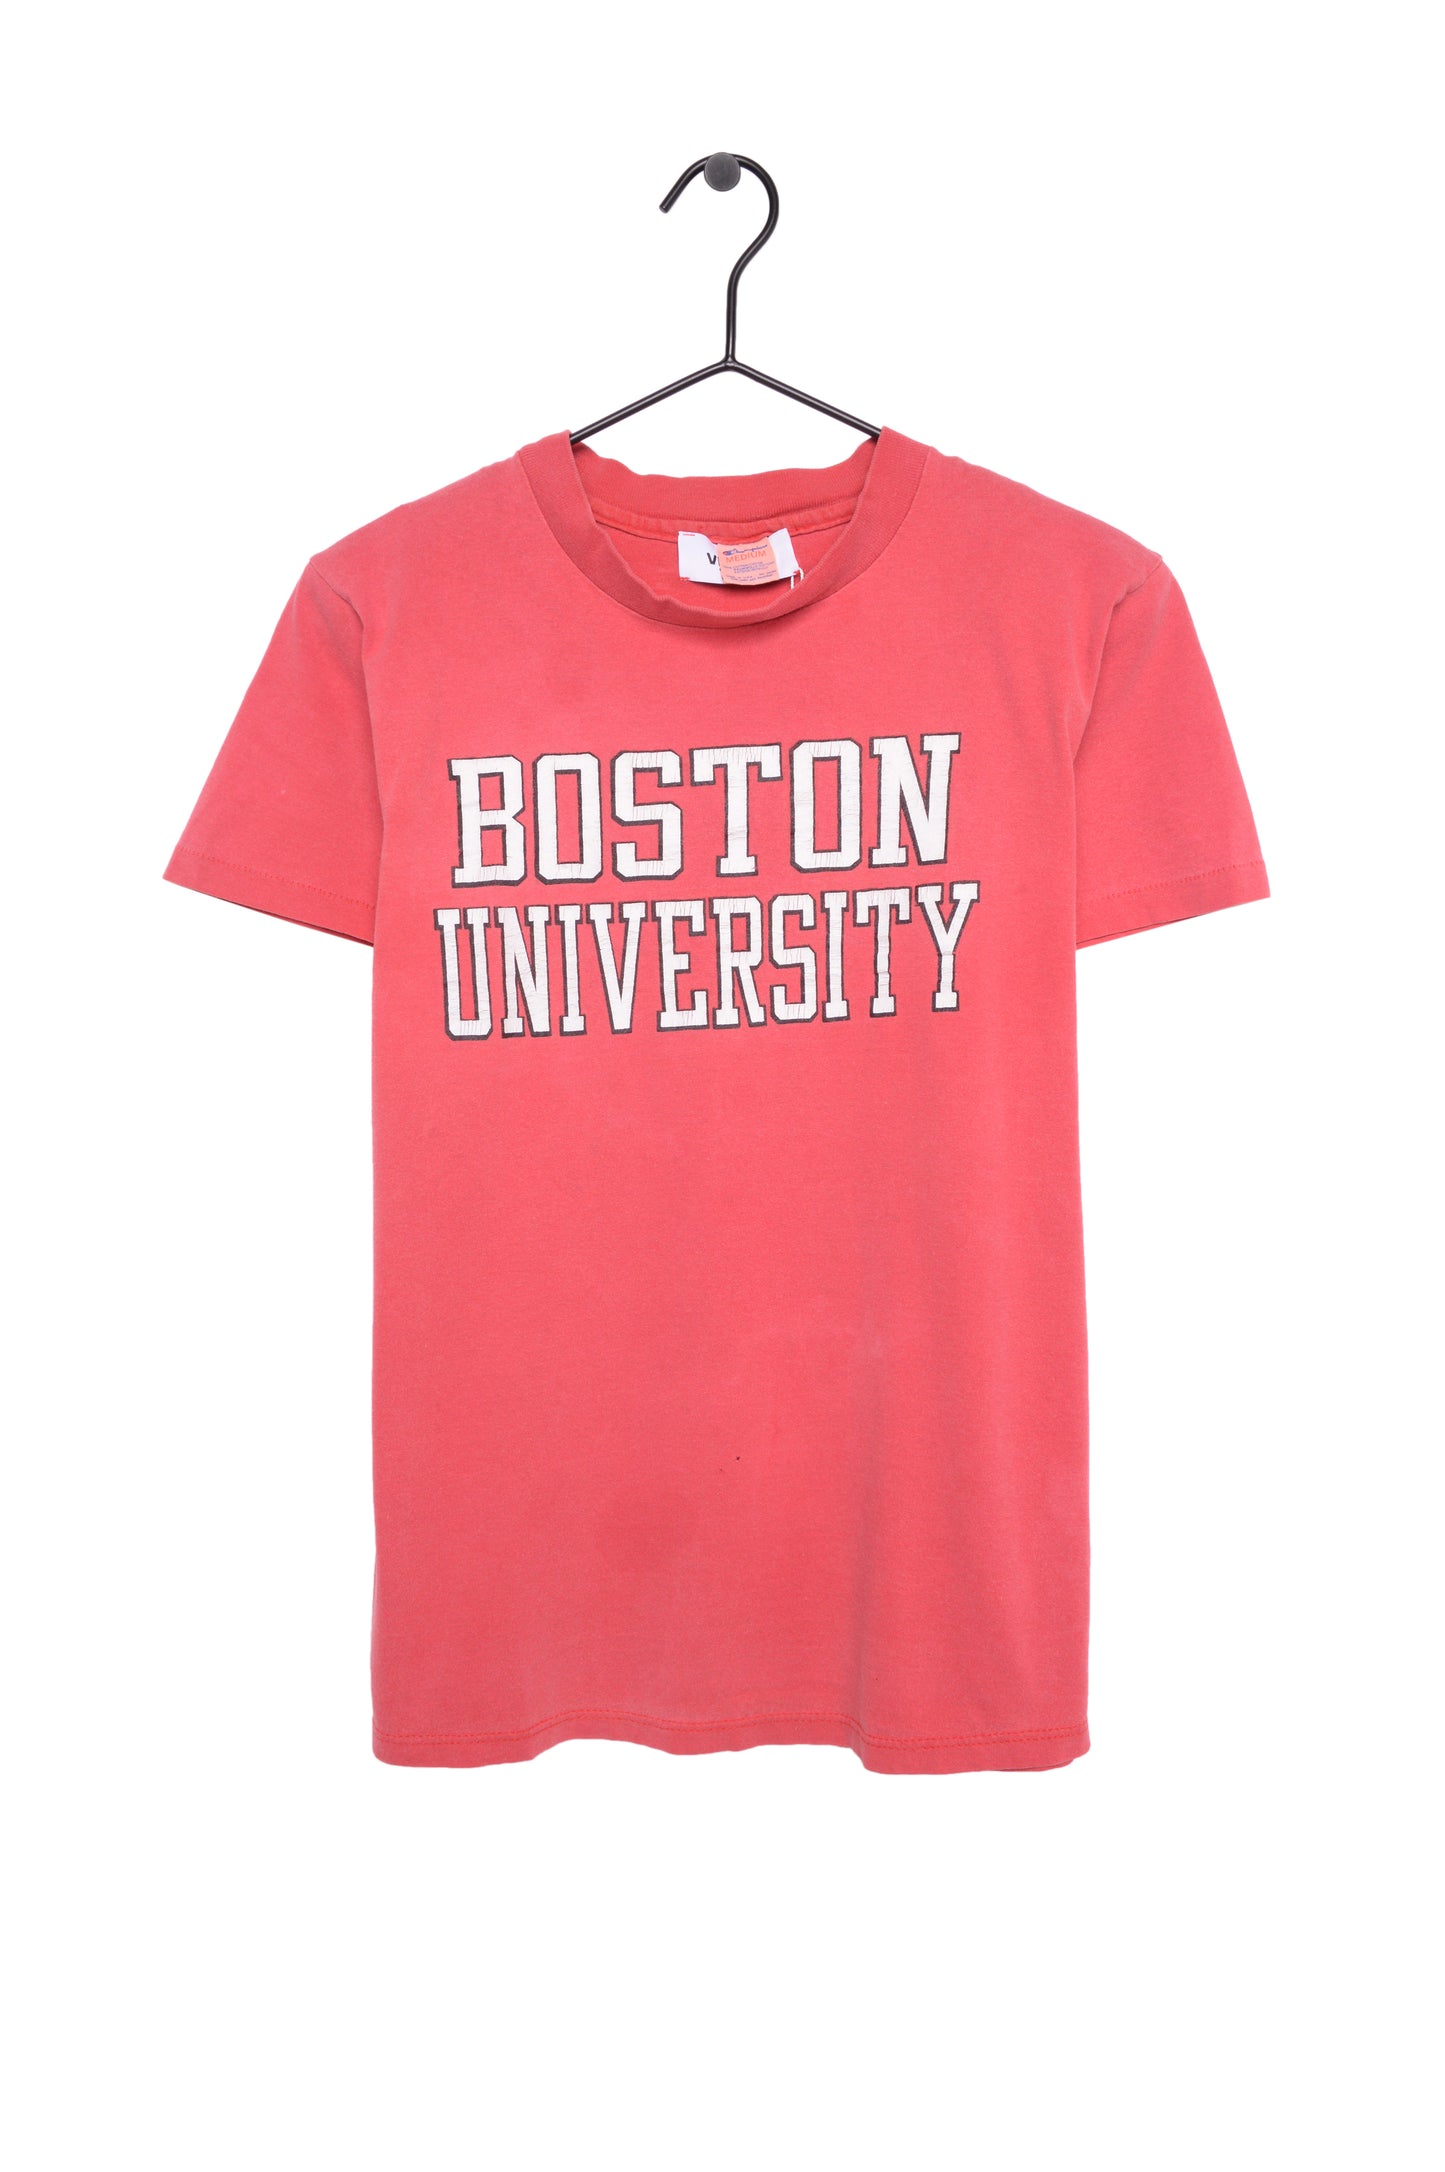 1980s Faded Boston University Baby Tee USA